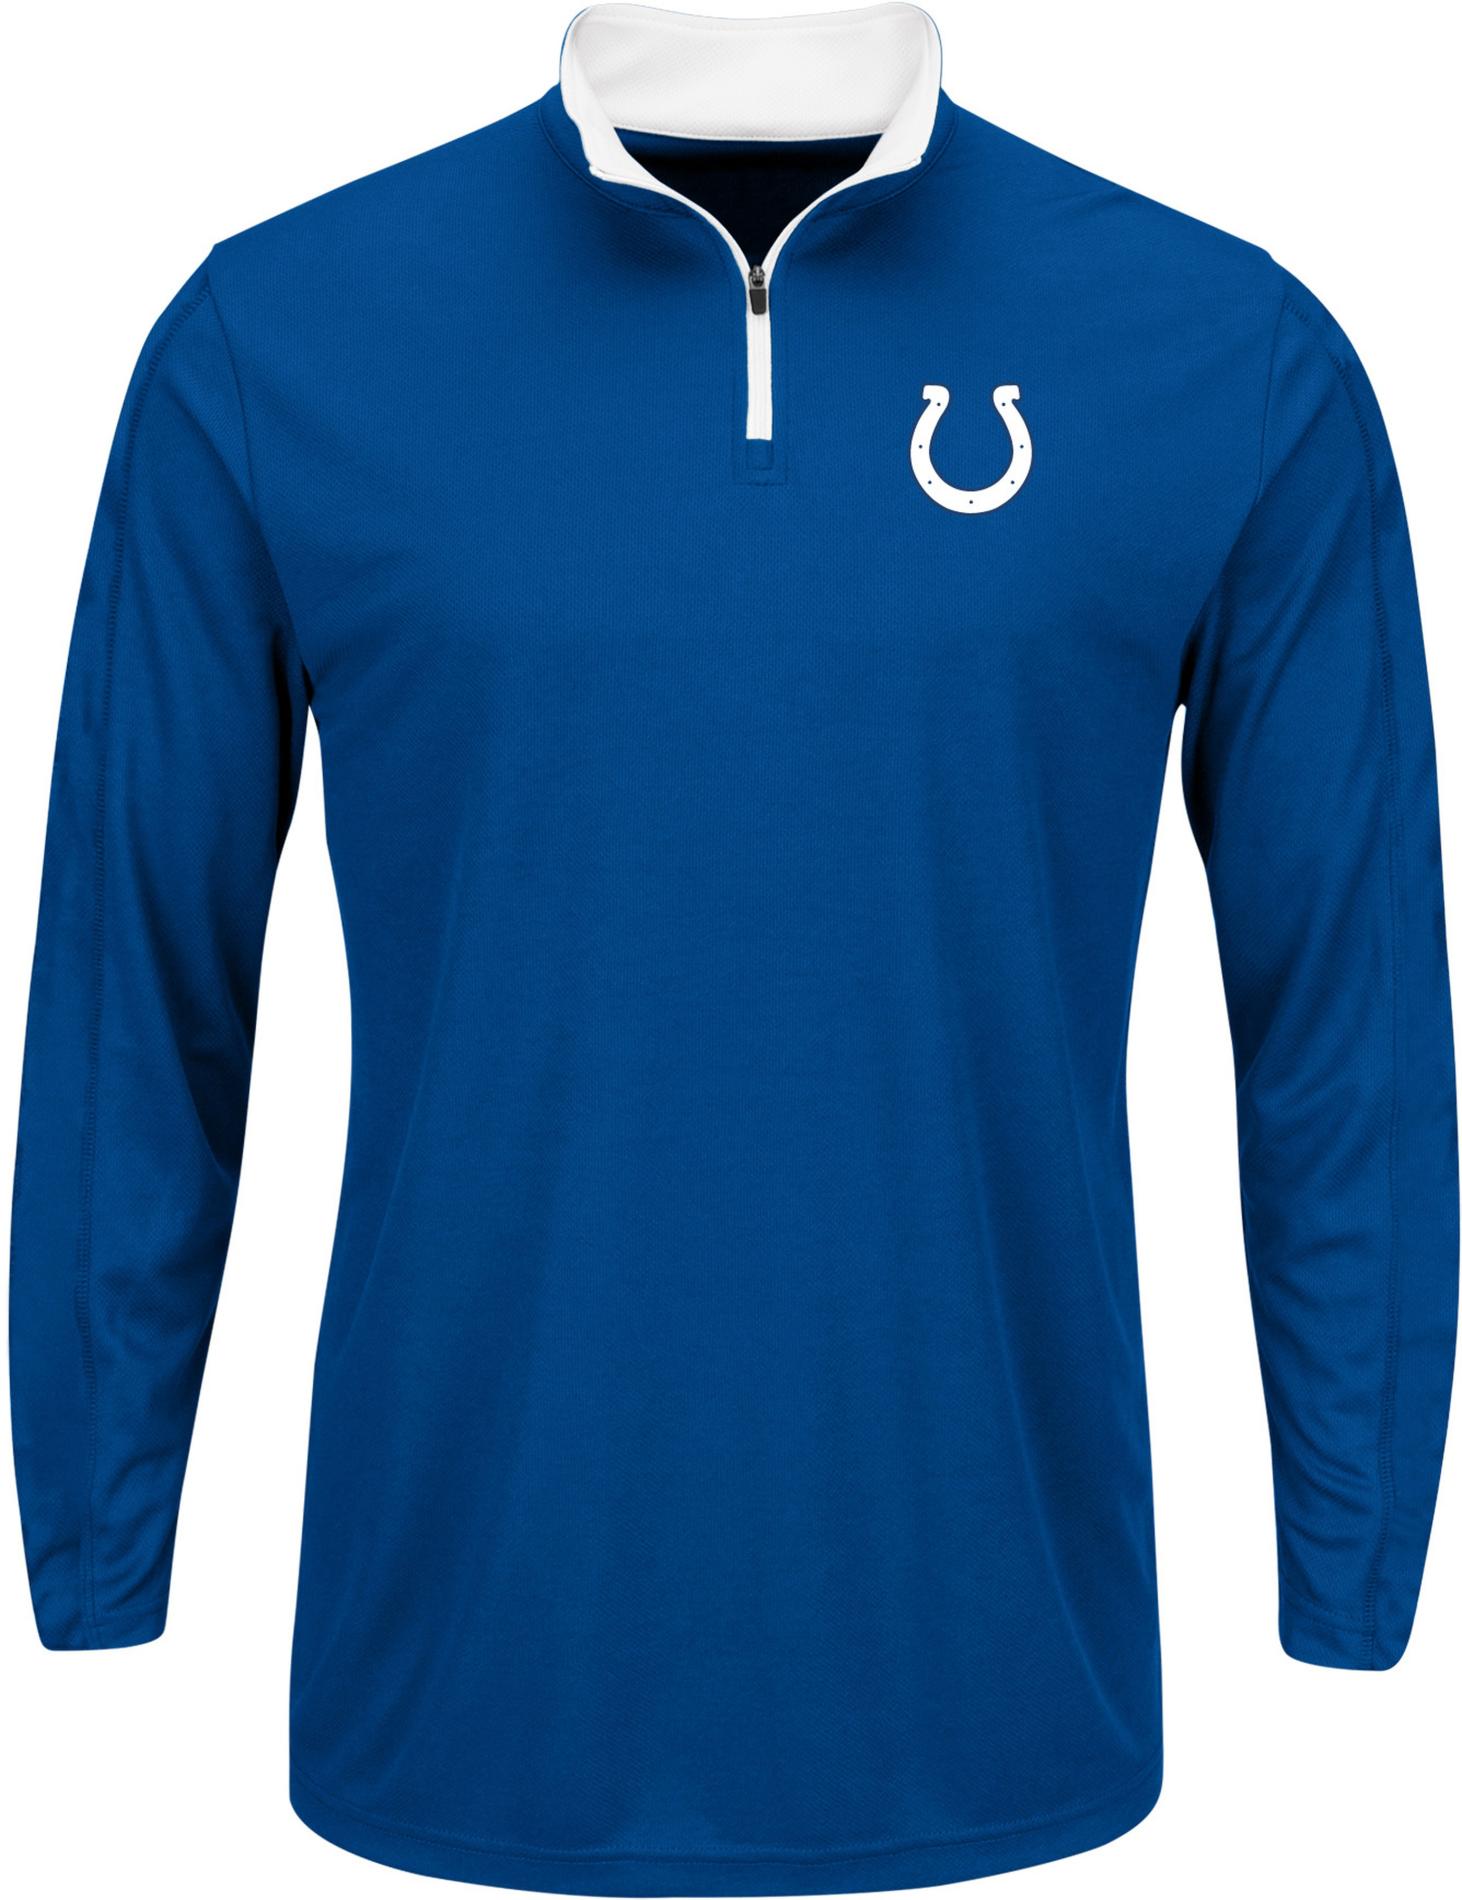 NFL Men's Quarter-Zip Shirt - Indianapolis Colts